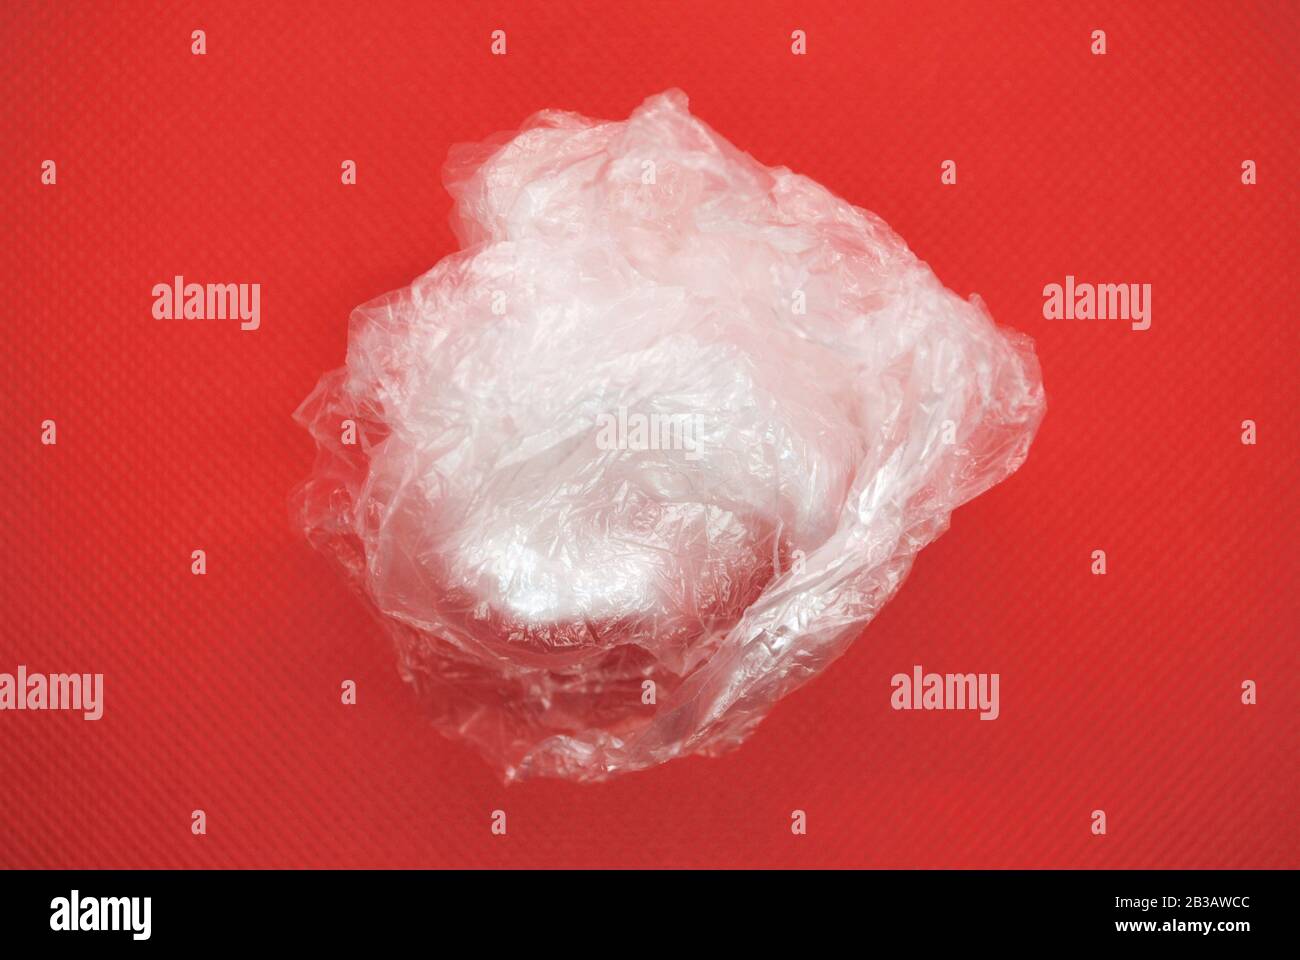 Sac en plastique blanc transparent transparent écrasé en polyéthylène sur fond rouge Banque D'Images